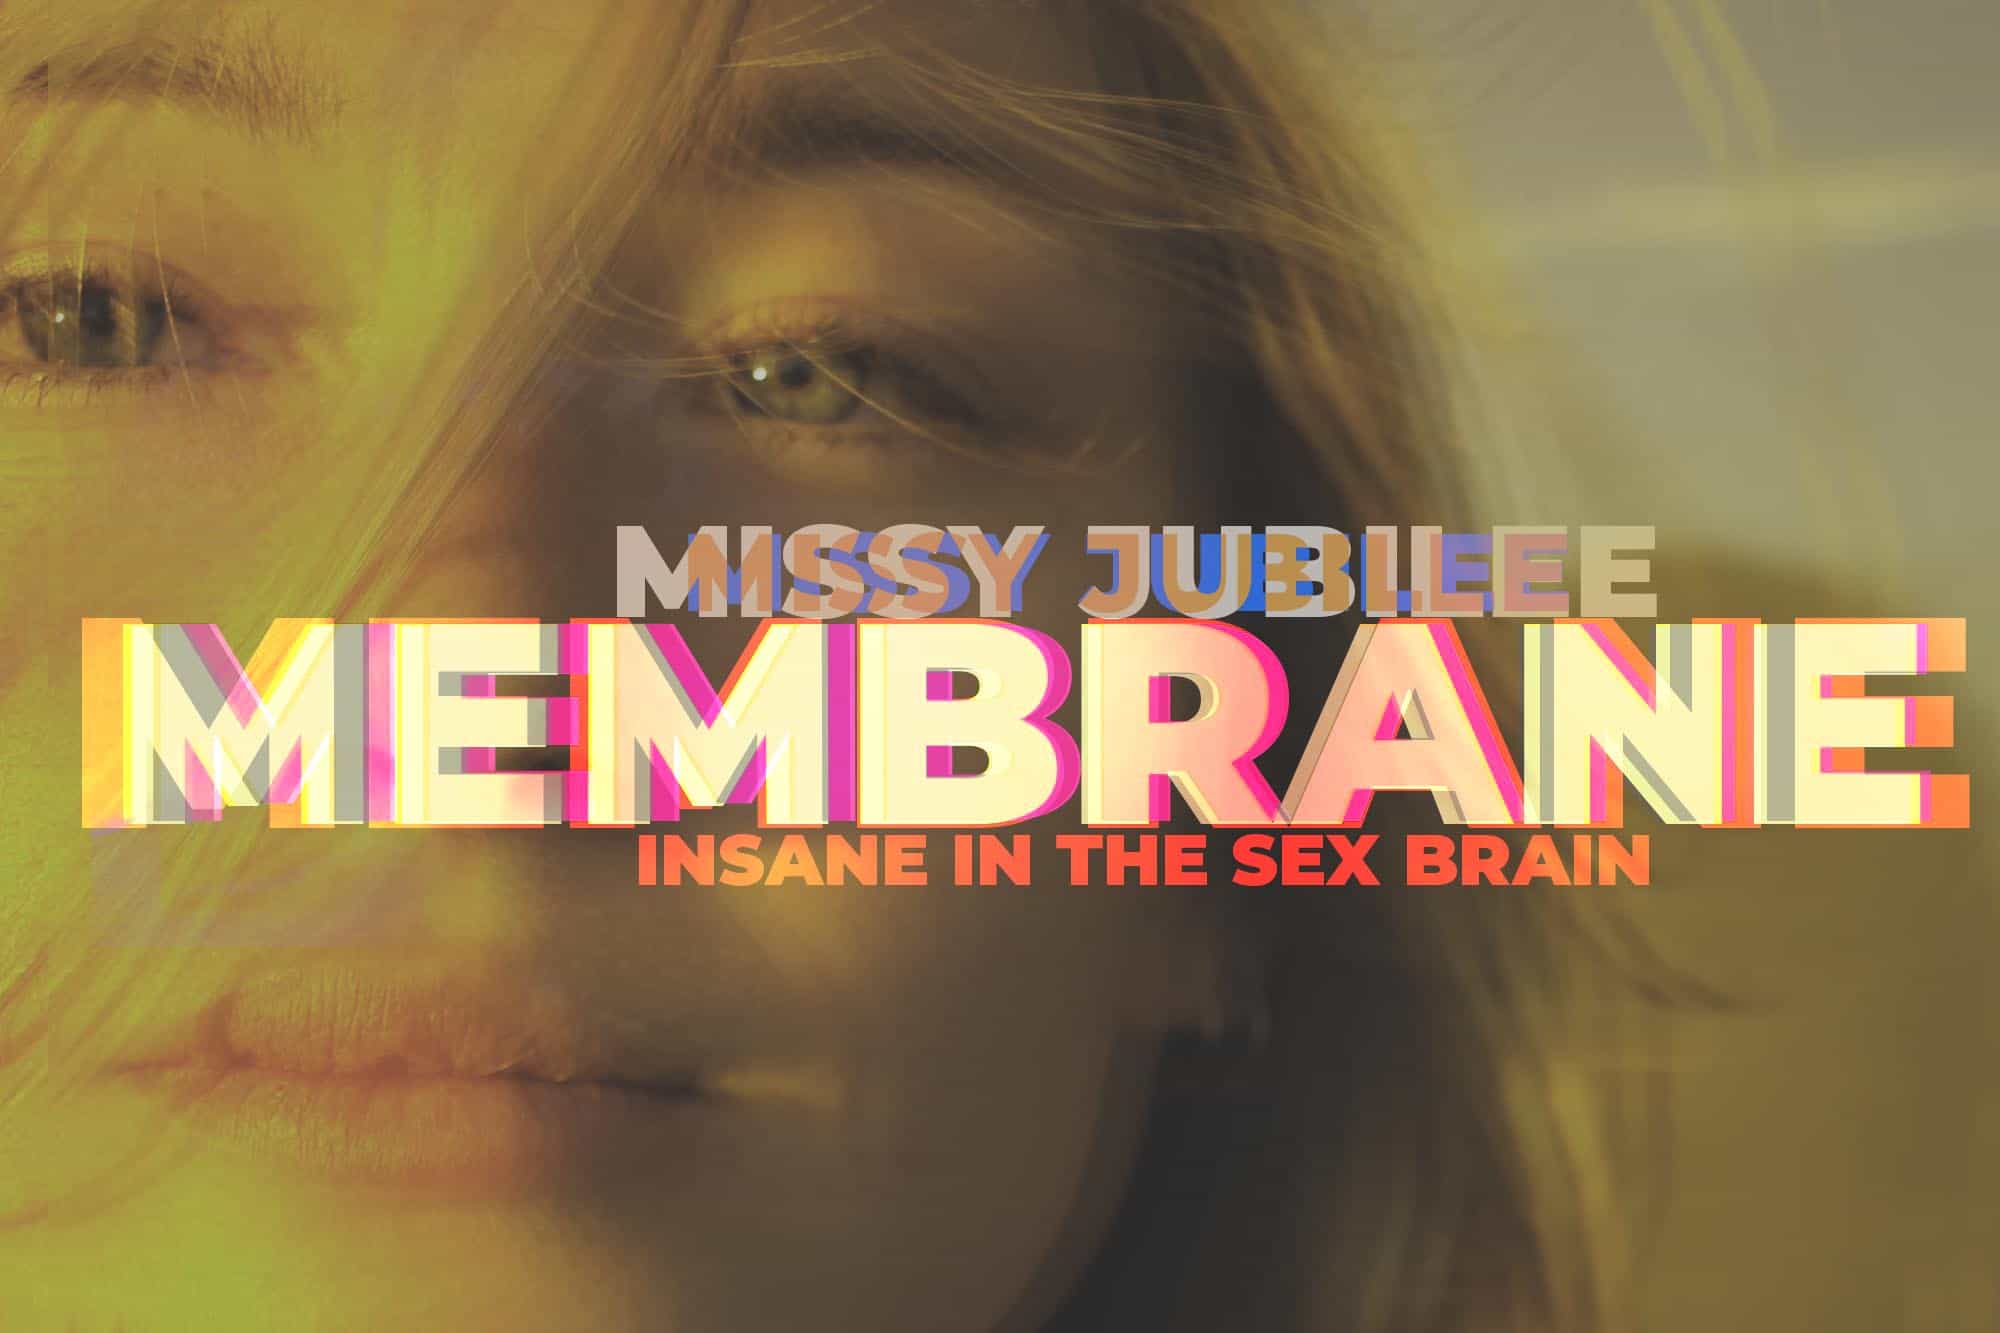 Film release poster Missy Jubilee 031 MEMBRANE